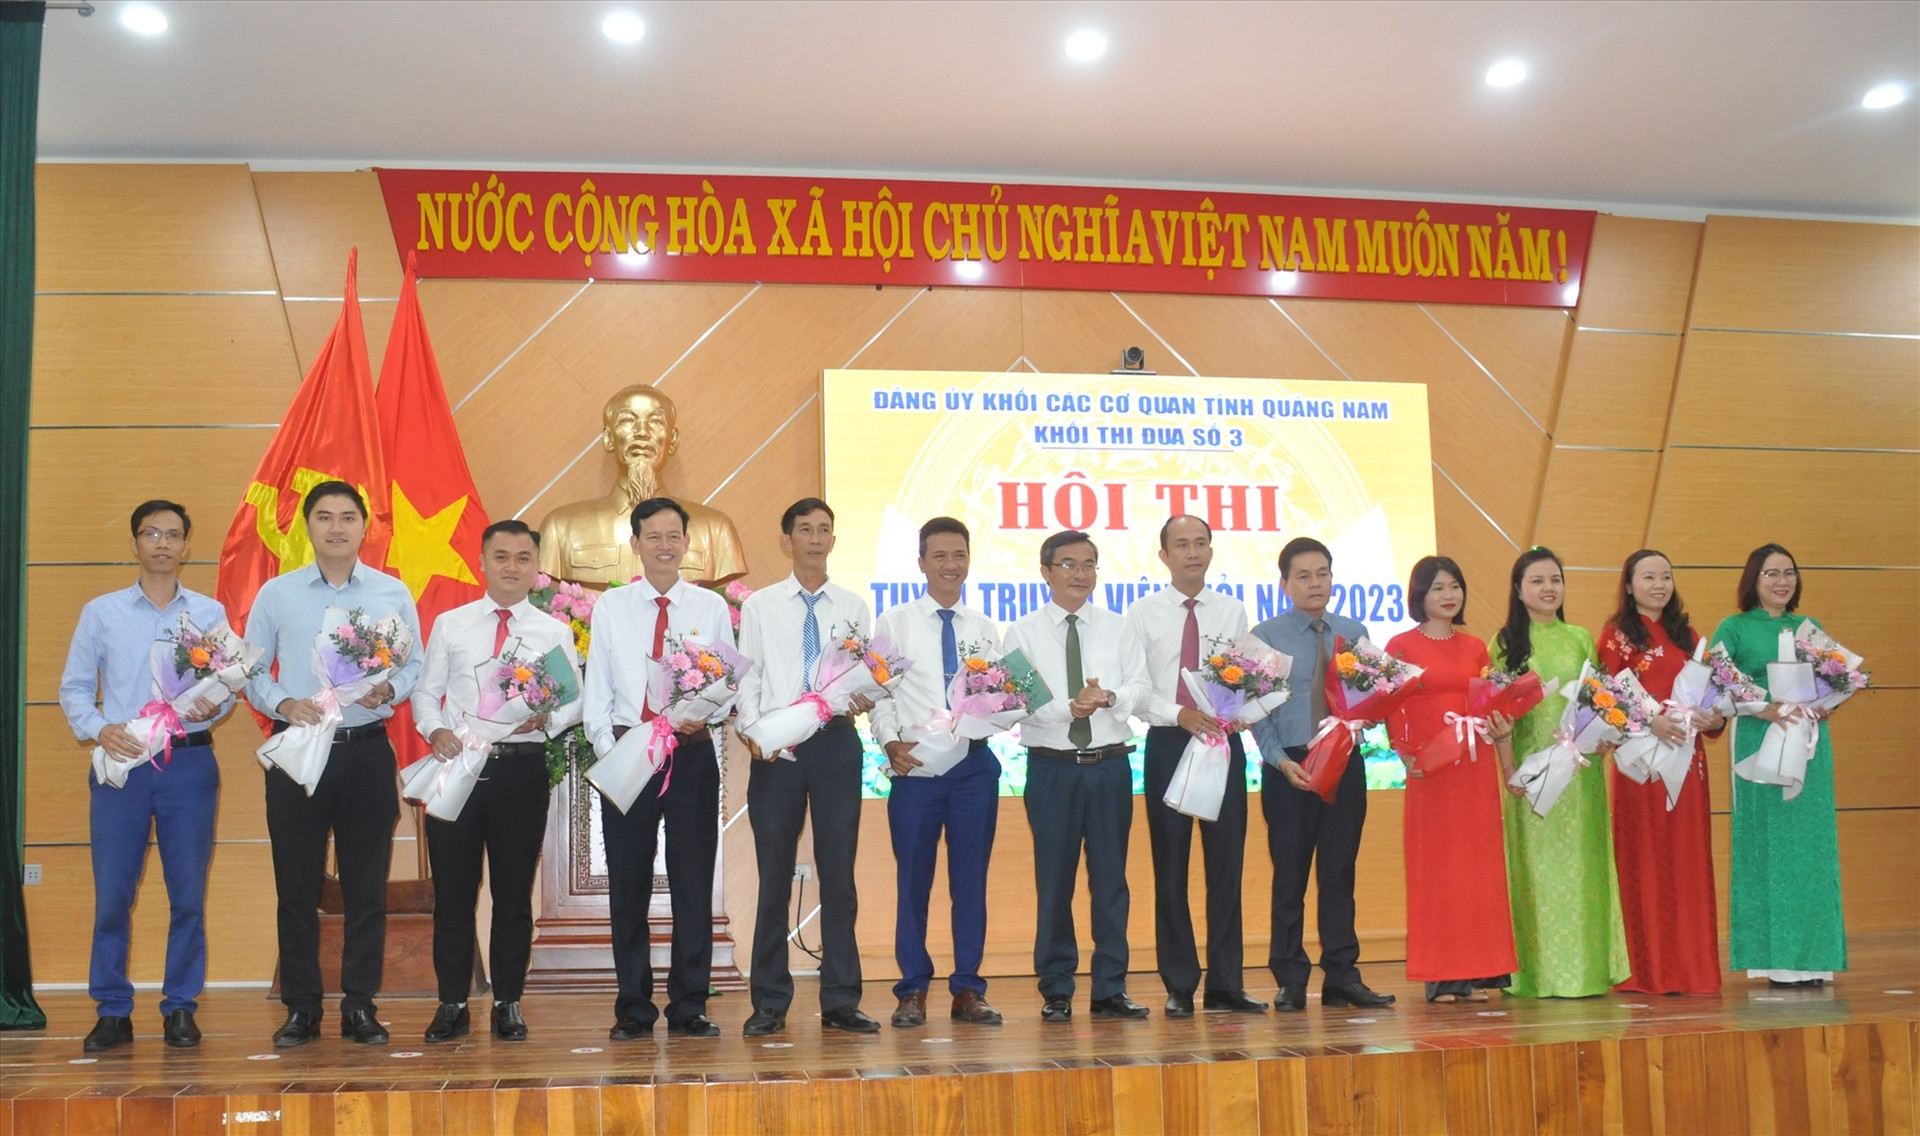 Ông Nguyễn Phi Hùng - Trưởng ban Tổ chức khối thi đua số 3 tặng hoa cho các thi sinh dự cuộc thi. Ảnh: N.Đ